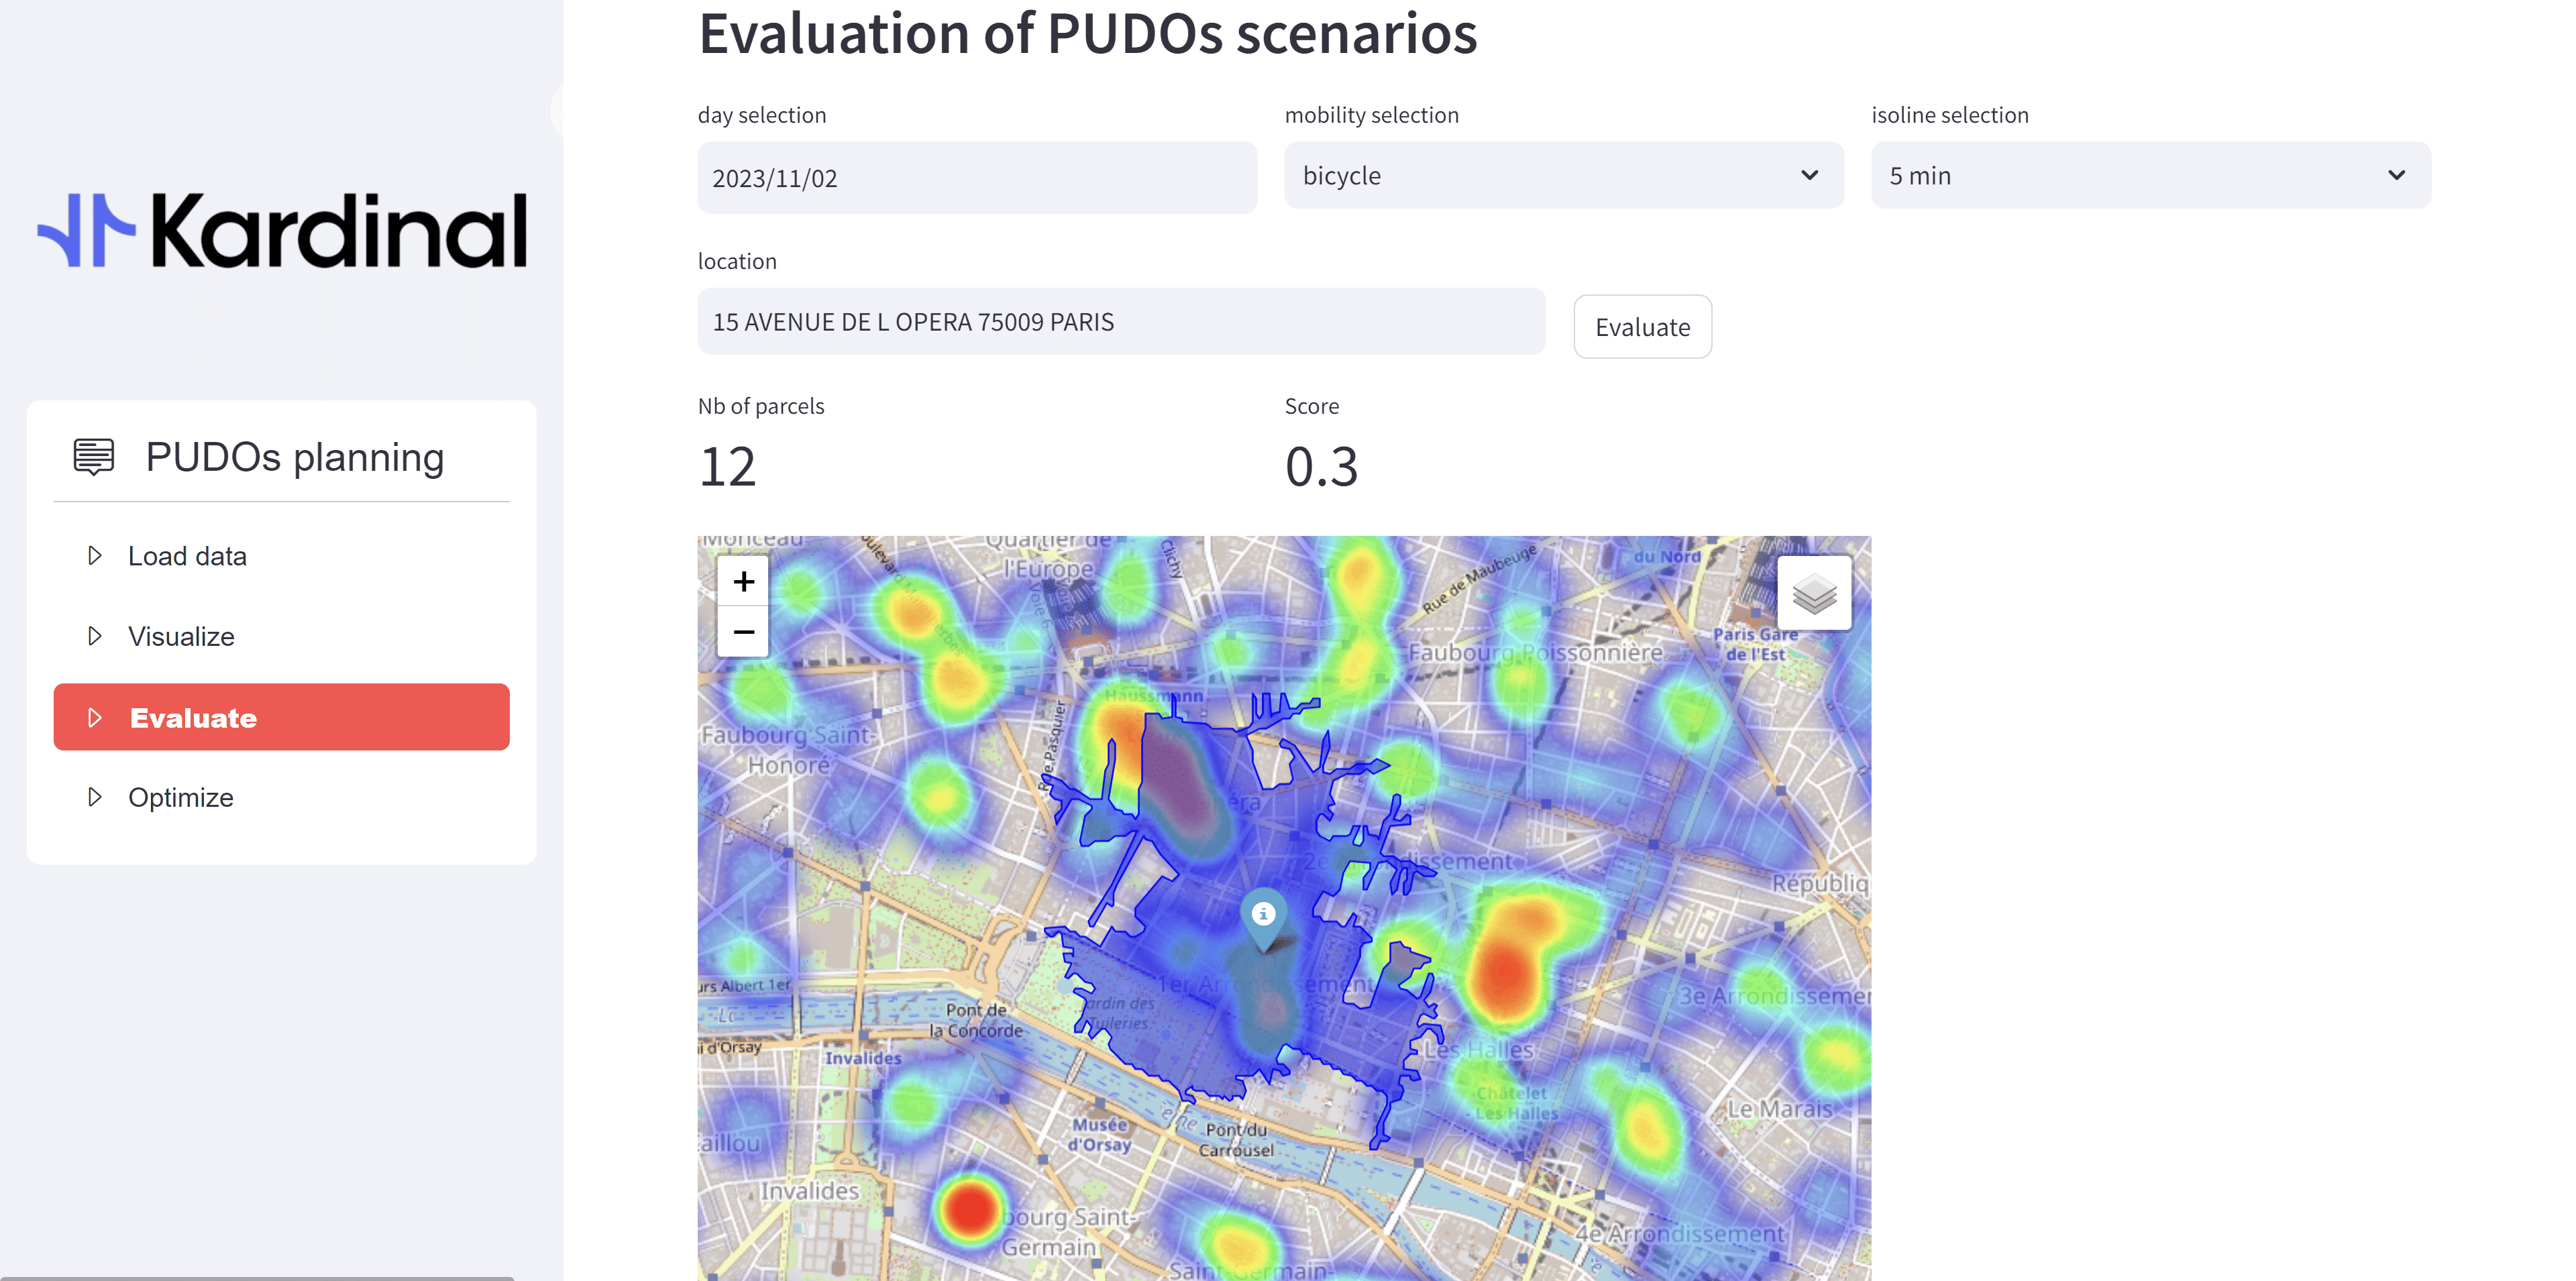 Evaluation of PUDO scenario